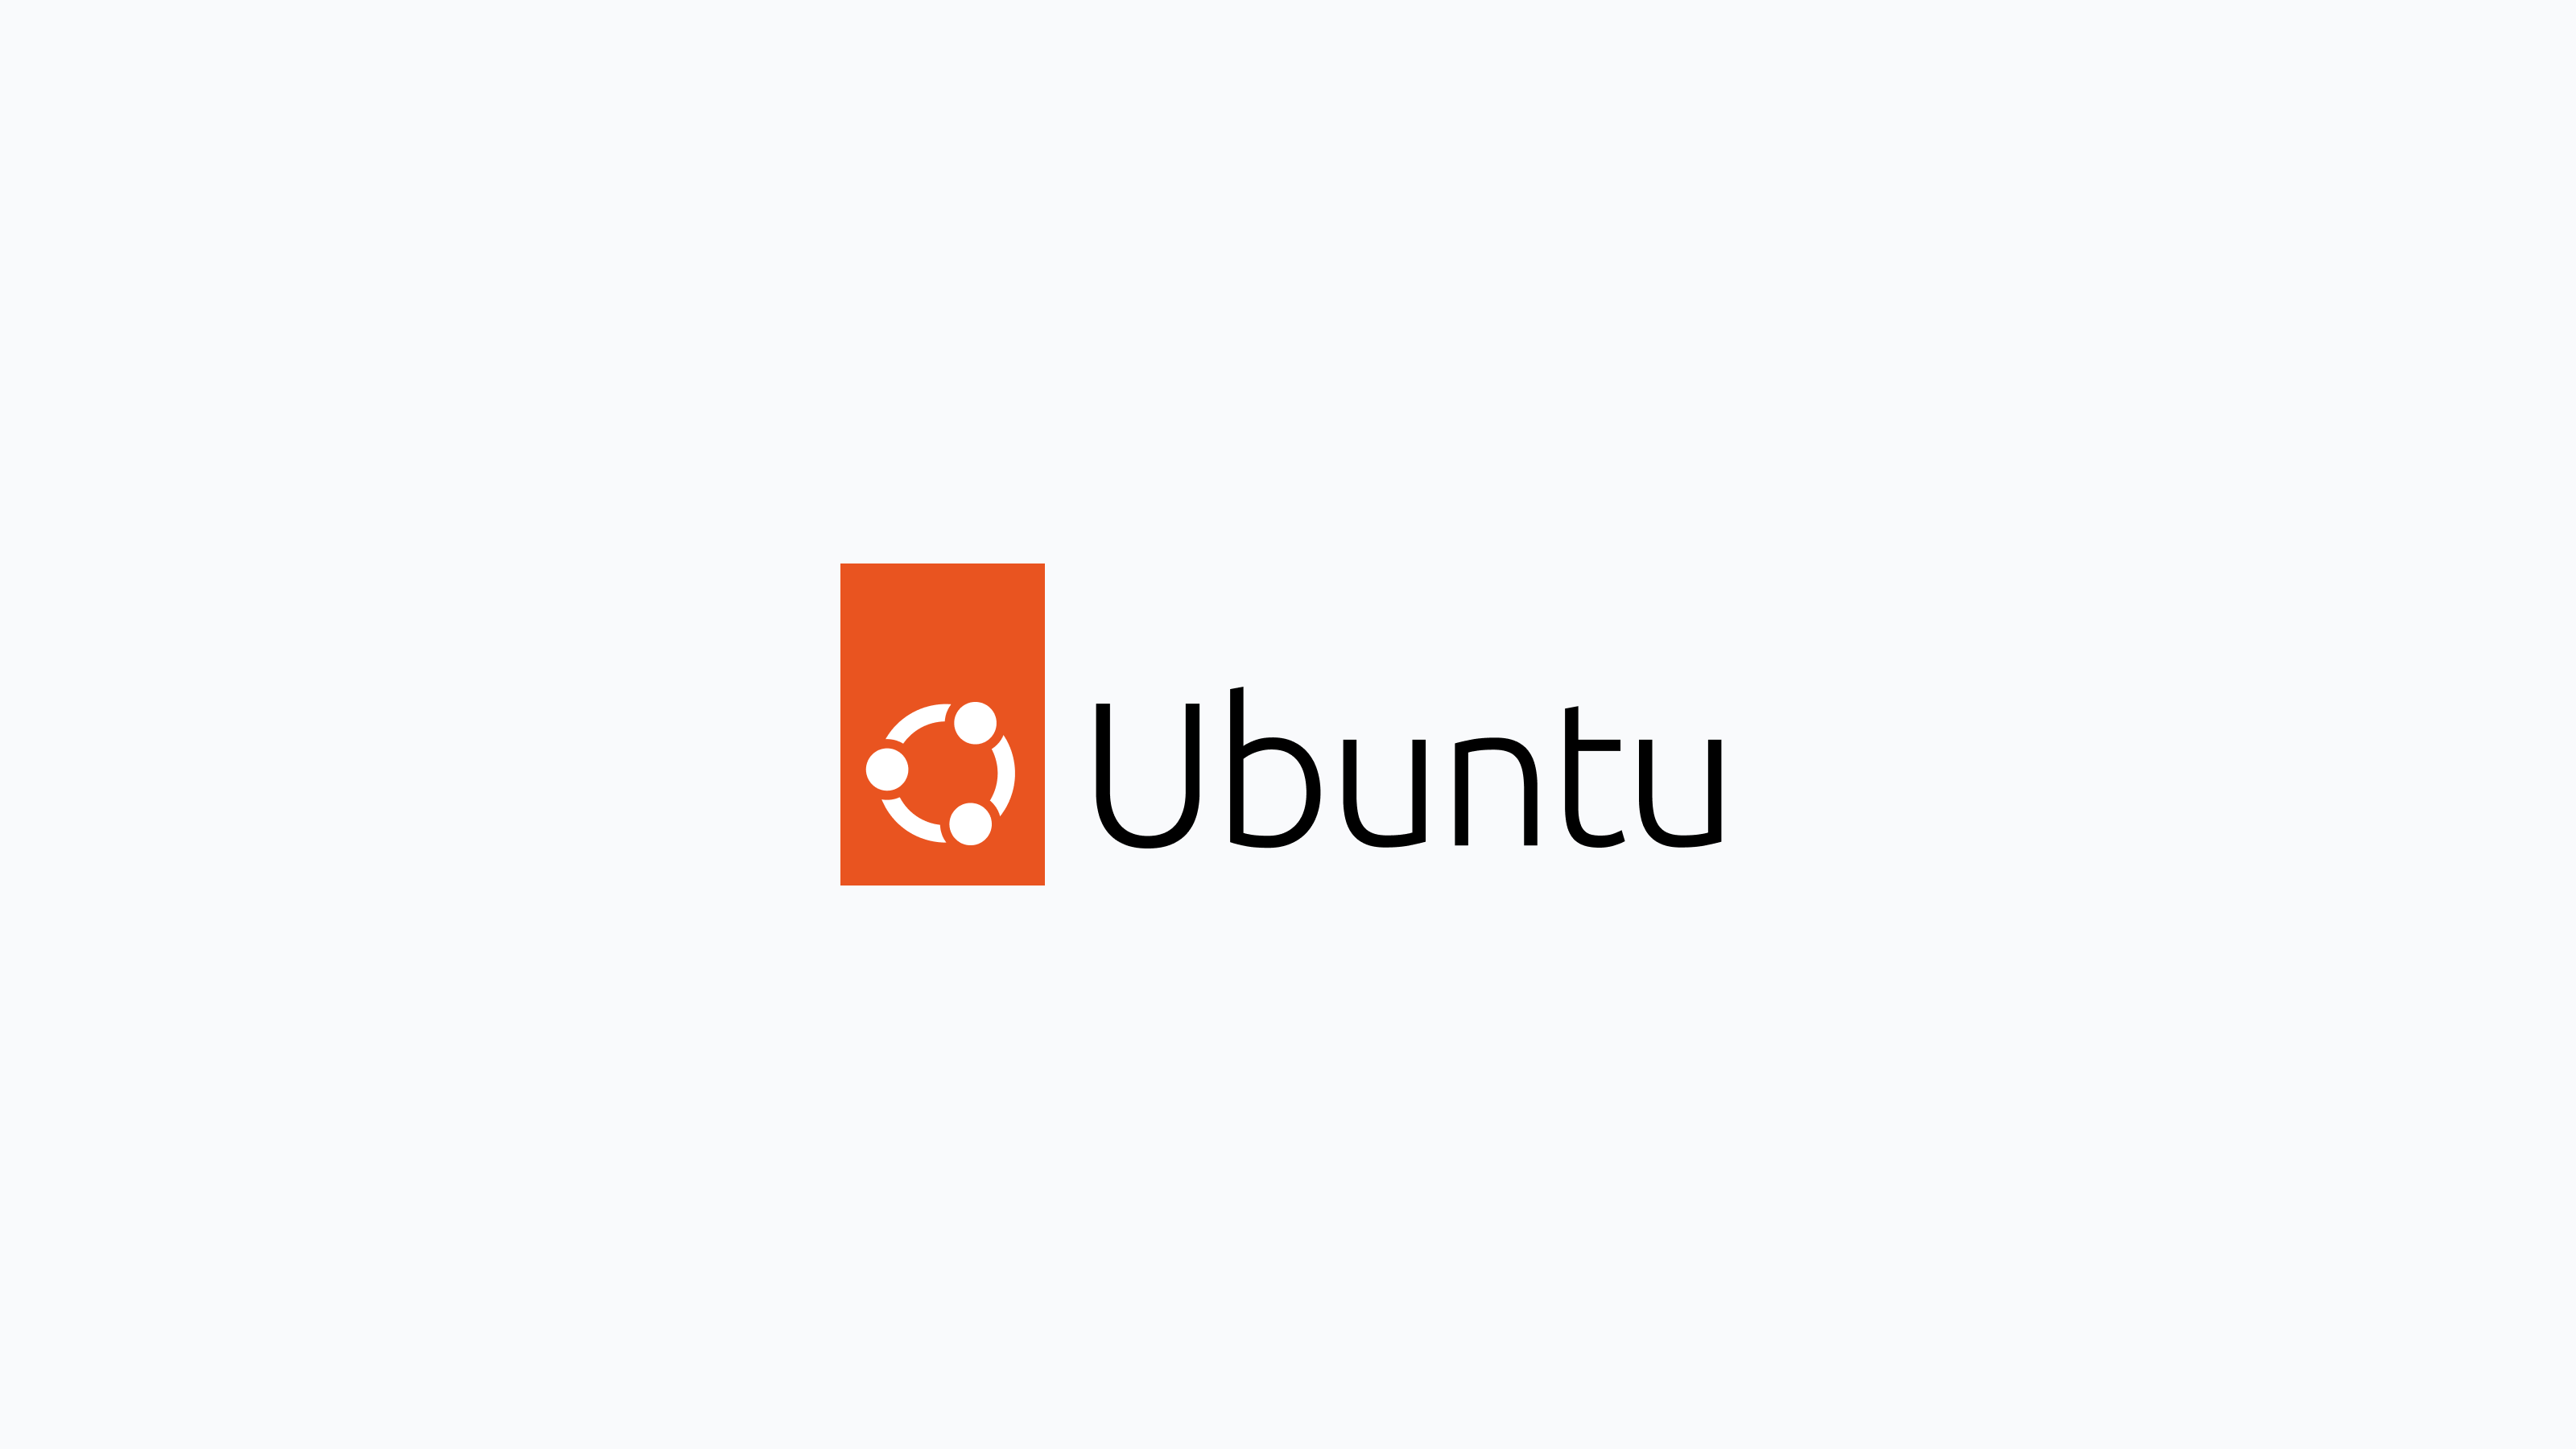 Deploy Fleet on Ubuntu with Elastic